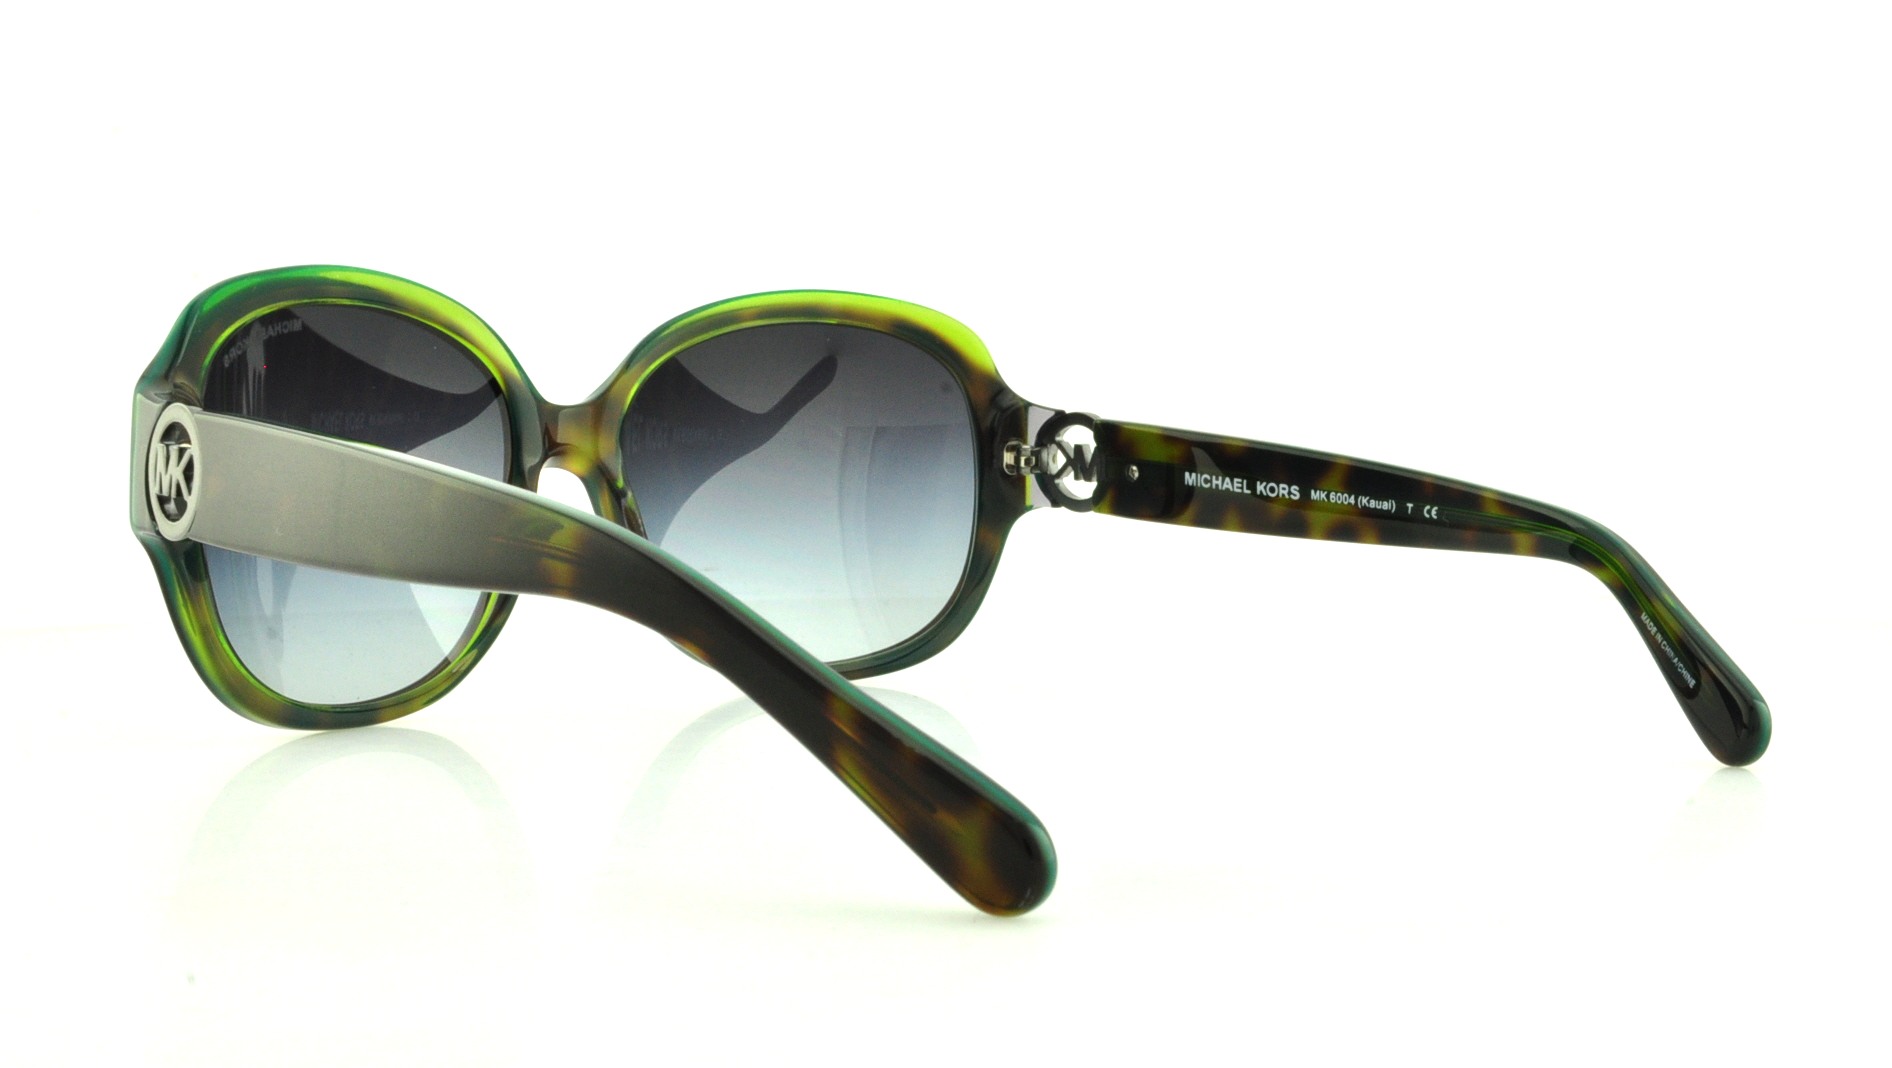 sunglasses for women on Mercari  Michael kors sunglasses Sunglasses Oval  sunglass